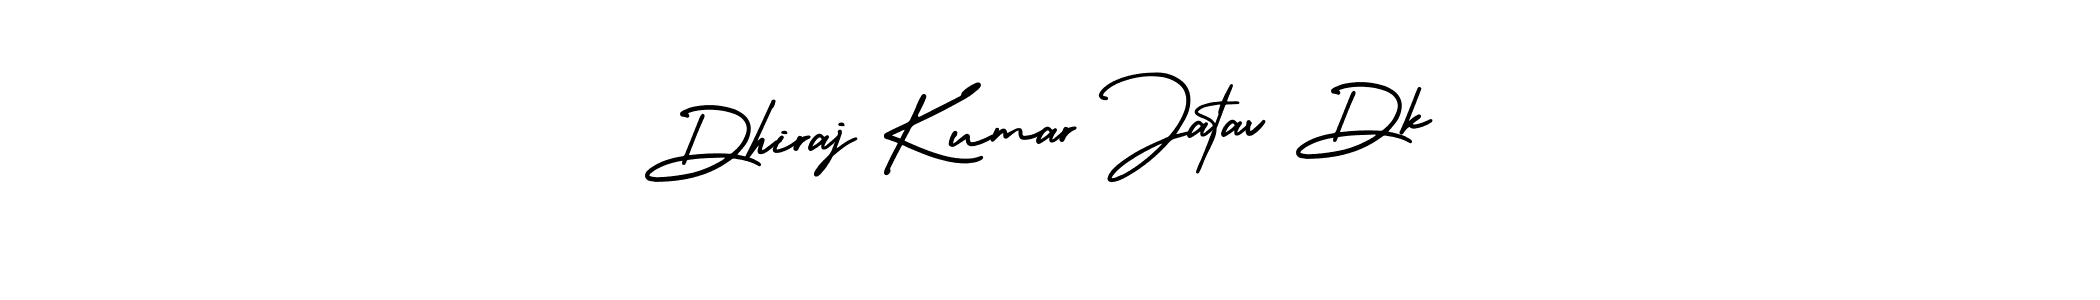 Dhiraj Kumar Jatav Dk stylish signature style. Best Handwritten Sign (AmerikaSignatureDemo-Regular) for my name. Handwritten Signature Collection Ideas for my name Dhiraj Kumar Jatav Dk. Dhiraj Kumar Jatav Dk signature style 3 images and pictures png